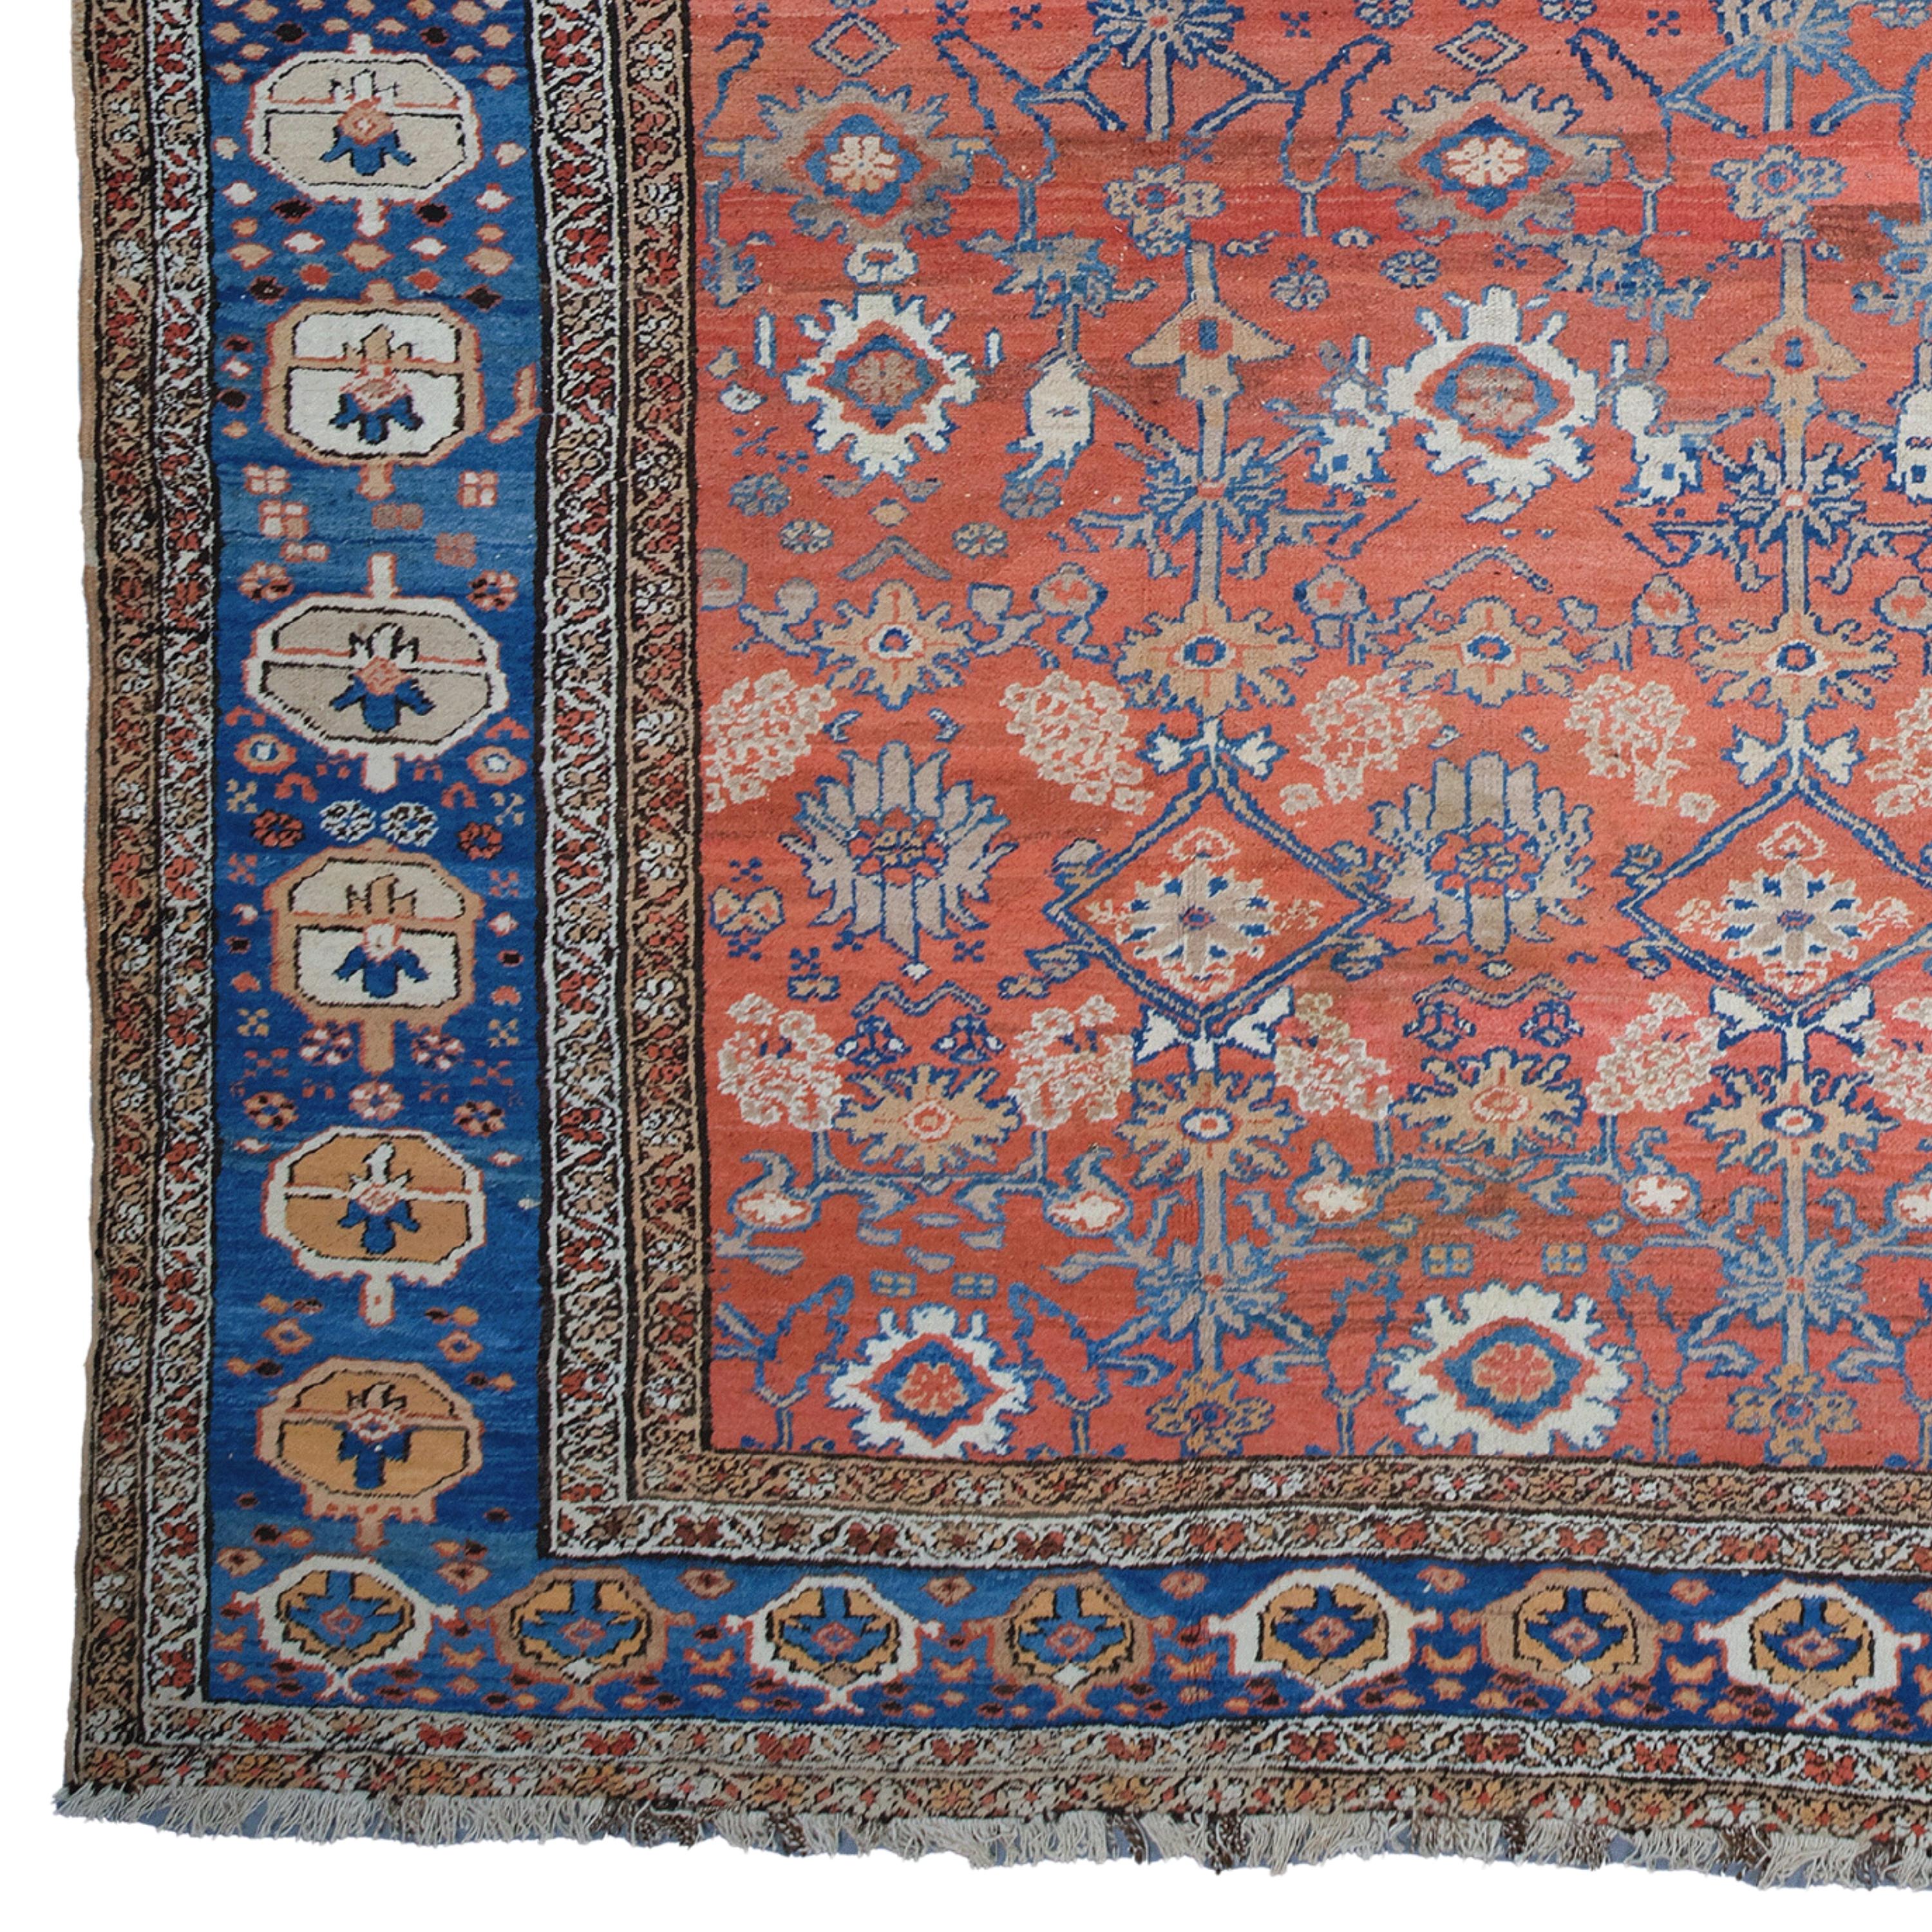 Ein zeitloses Meisterwerk: Antiker Bakshaish-Teppich aus dem späten 19. Jahrhundert

Wenn Sie Ihr Zuhause historisch und künstlerisch aufwerten wollen, ist dieser antike Teppich genau das Richtige für Sie. Dieser Teppich ist ein Bakschaisch-Teppich,